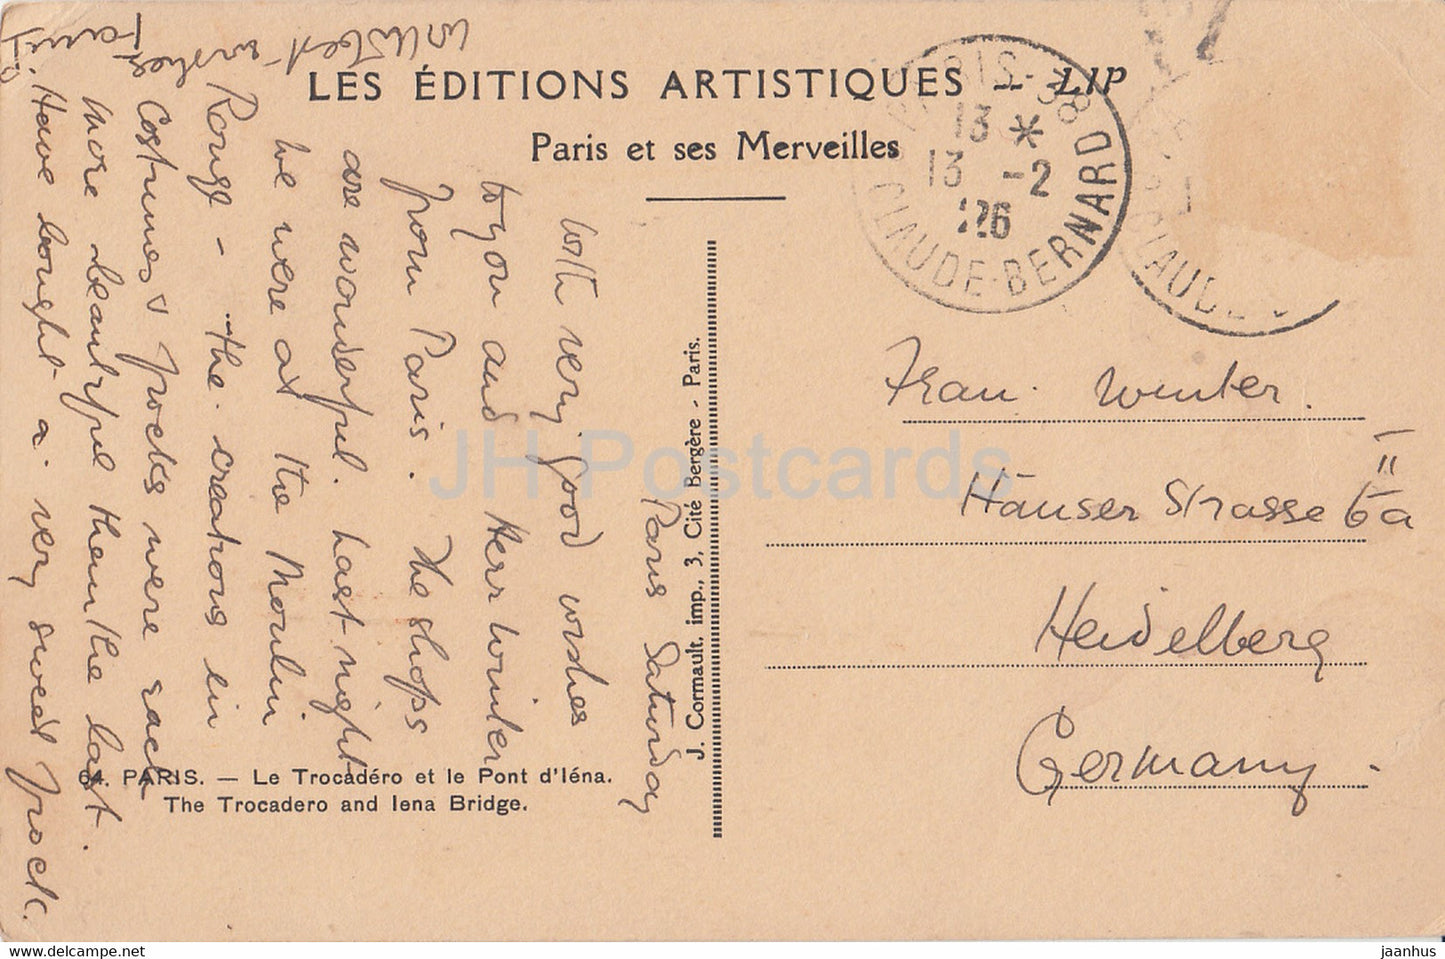 Paris - Le Trocadéro et le Pont d'Iena - Le Trocadéro et le pont d'Iena - voiture - 64 - carte postale ancienne - 1926 - France - occasion